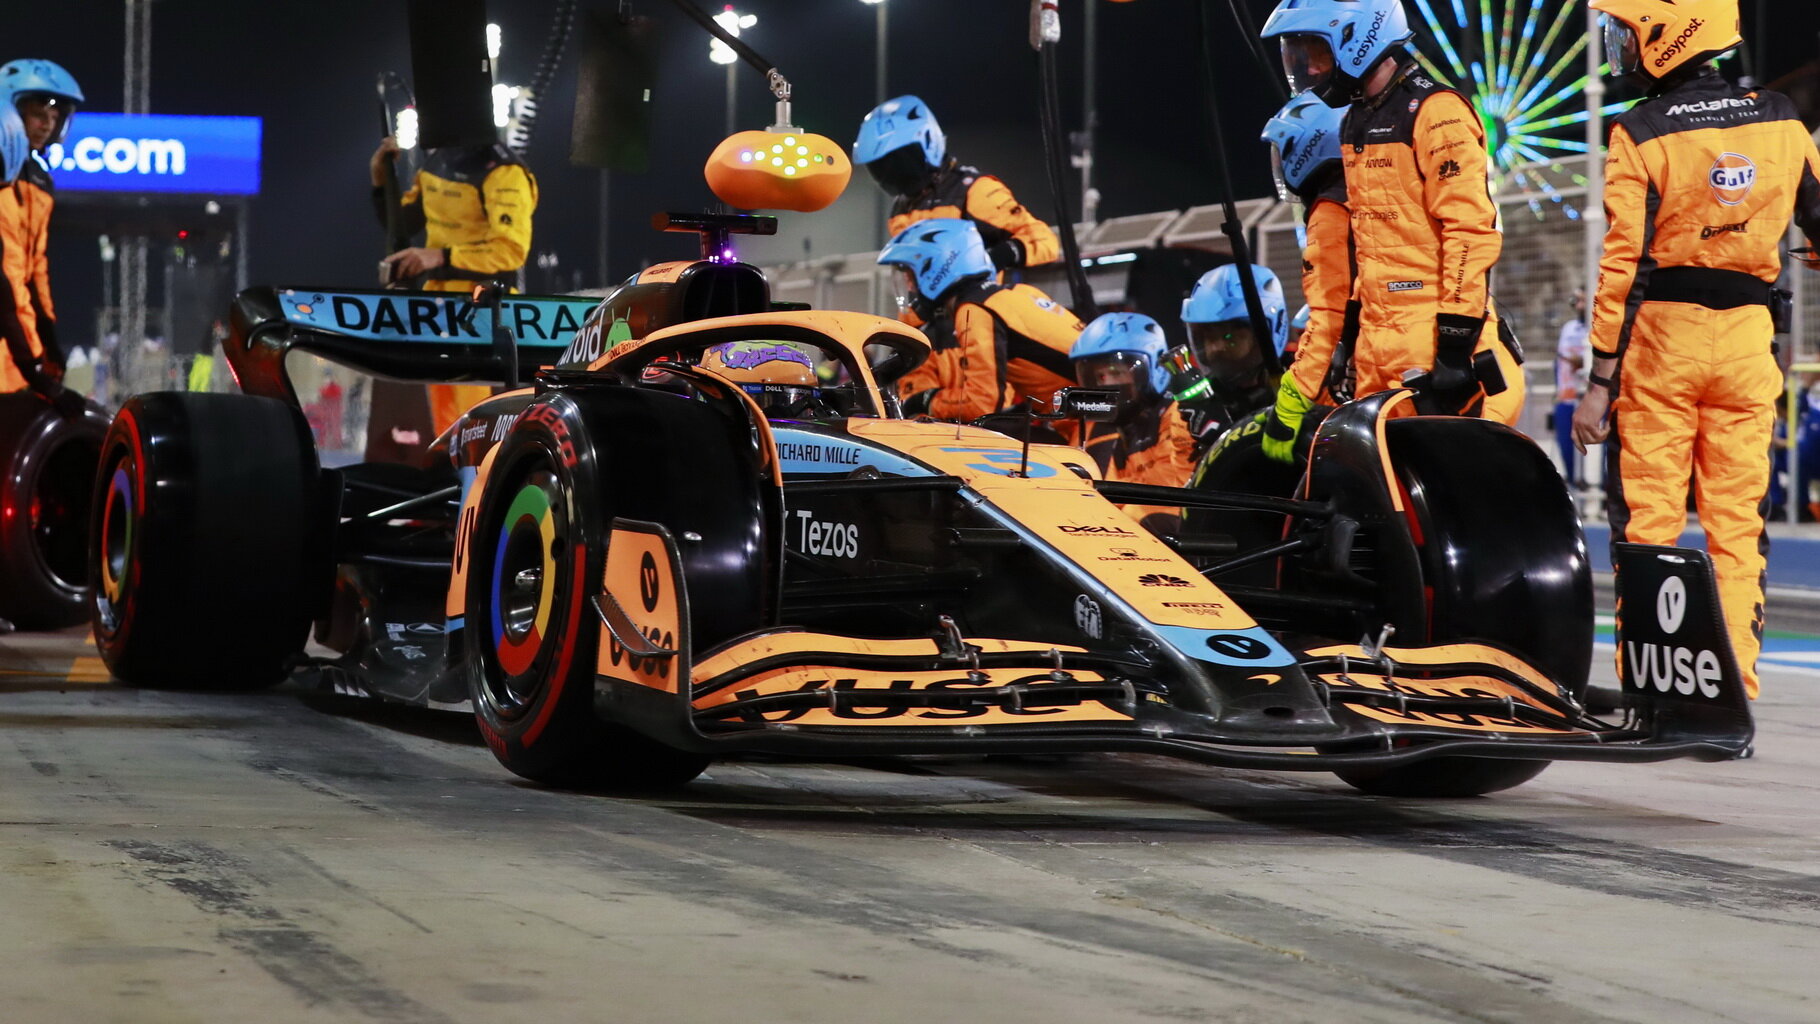 McLaren letos kraluje v boxech - předvádí nejlepší zastávky ze všech týmů